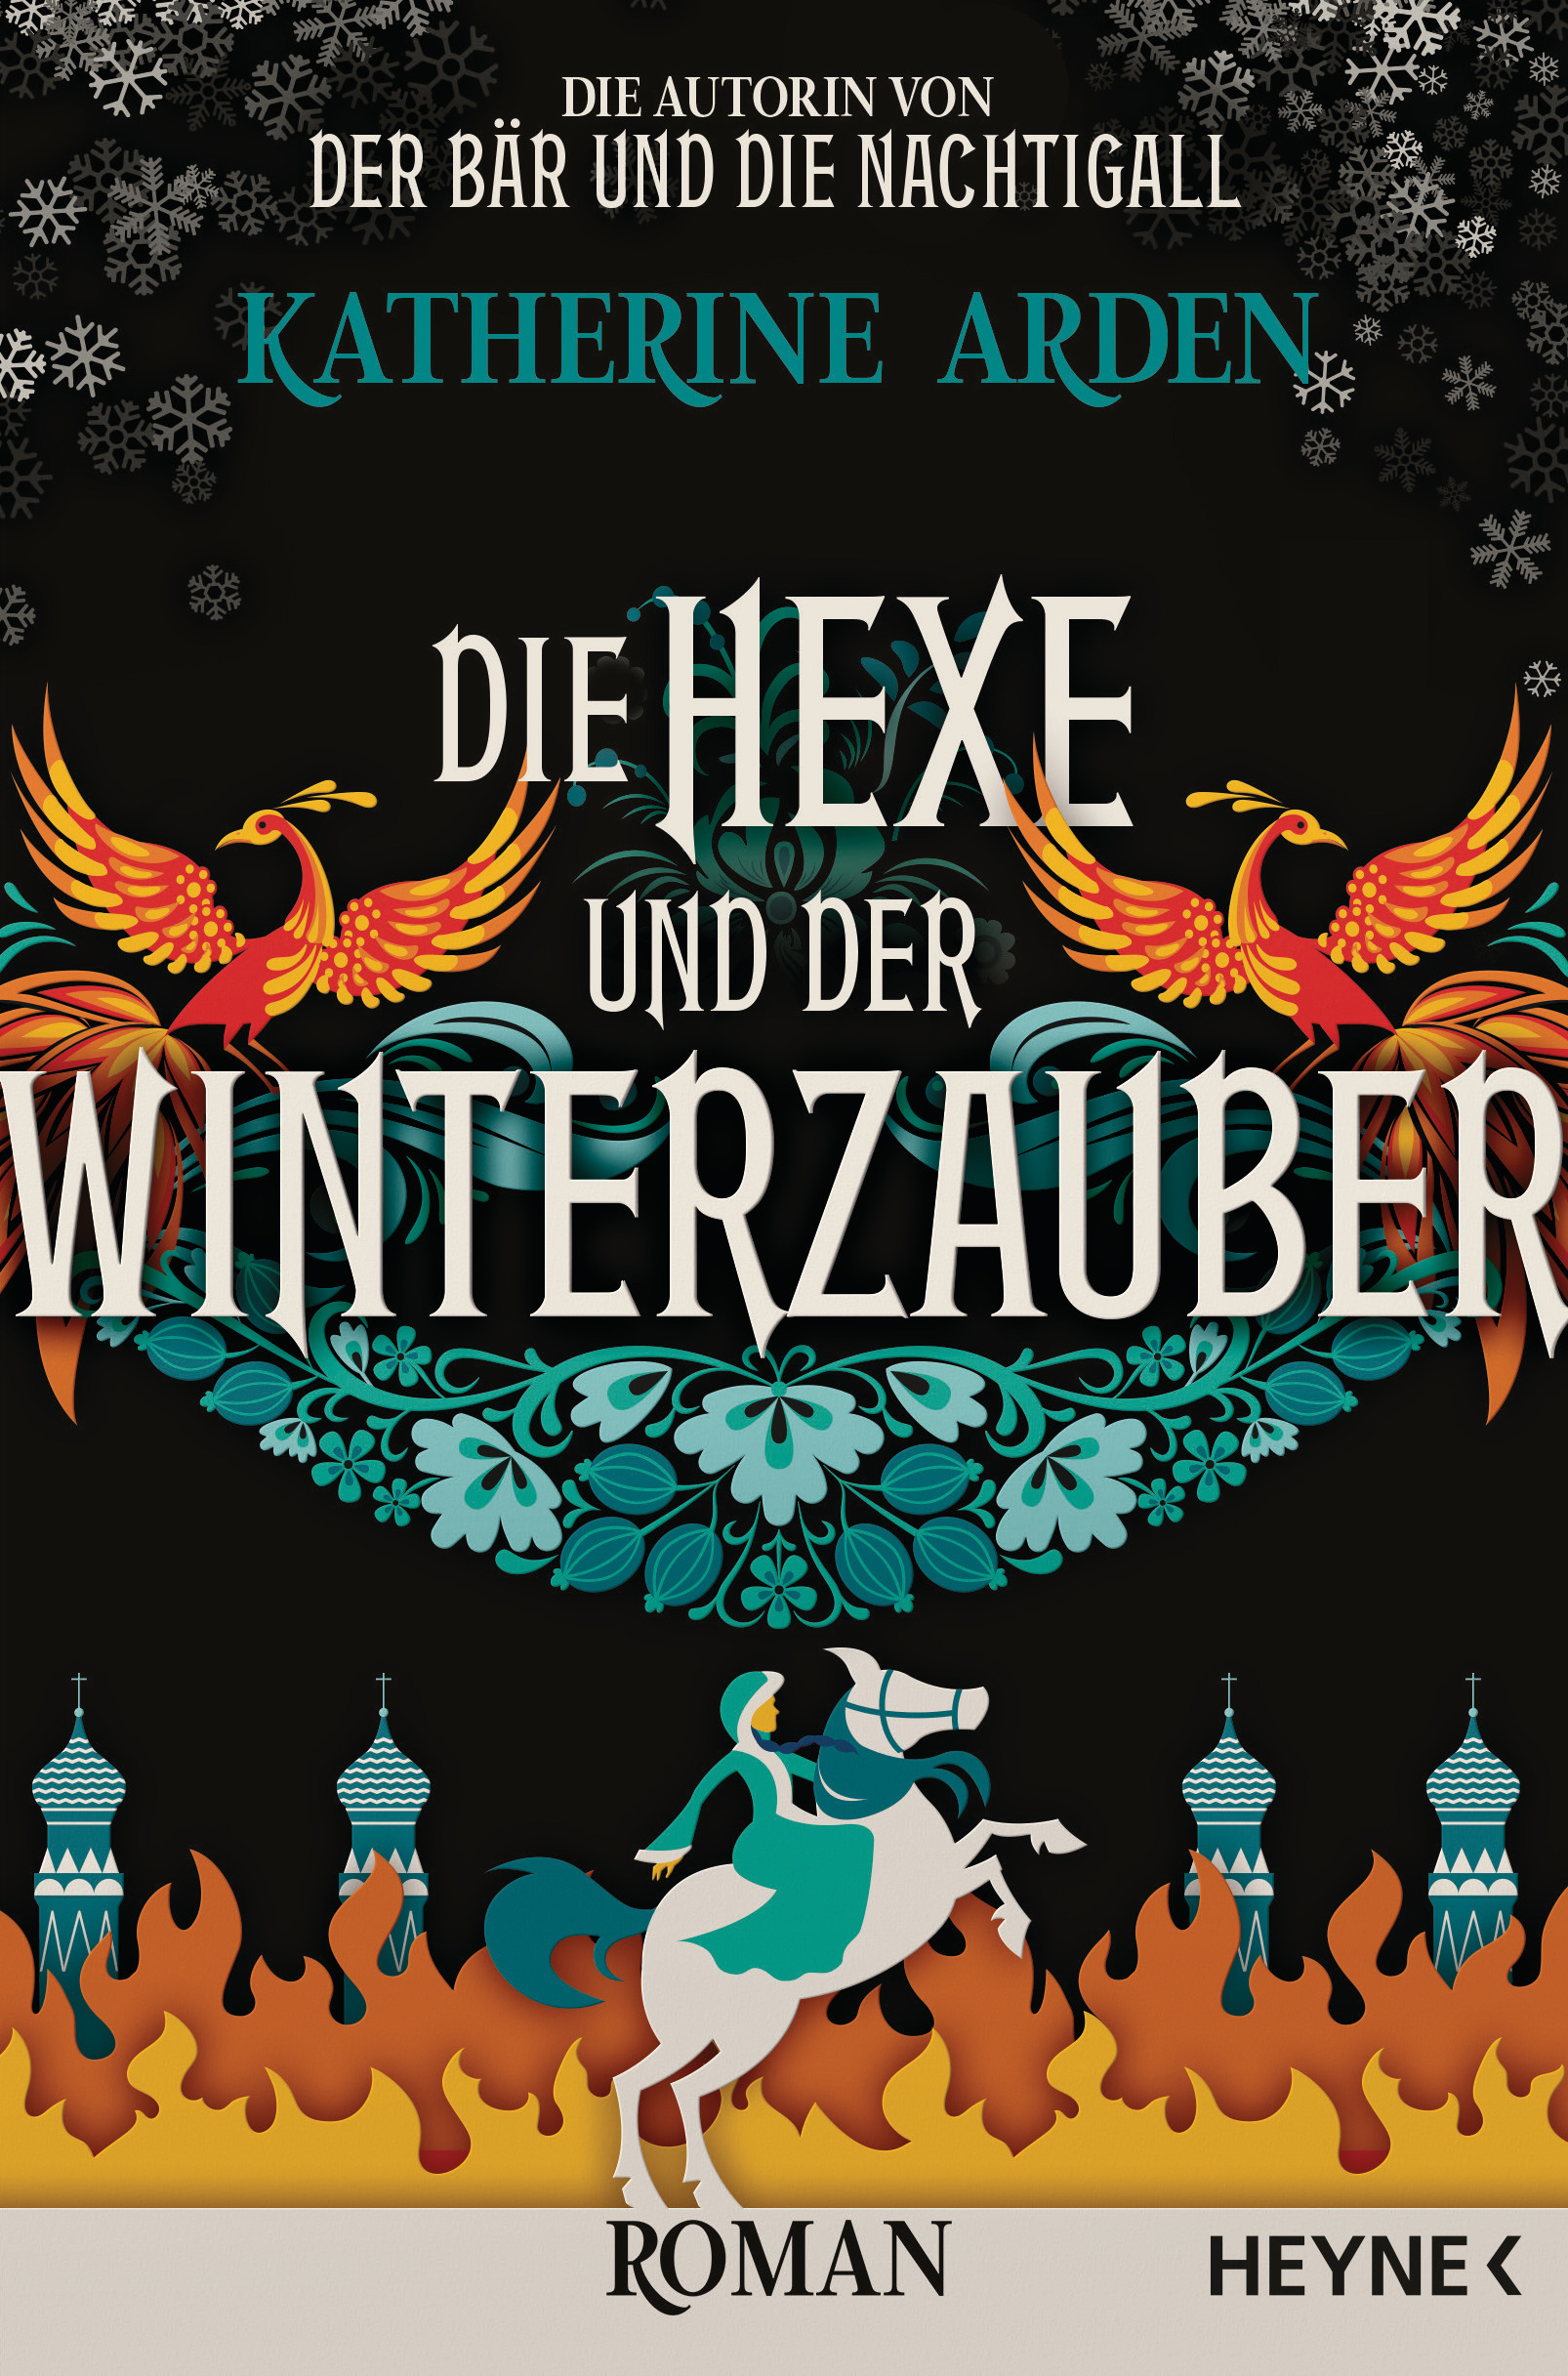 Bücherblog. Neuerscheinungen. Buchcover. Die Hexe und der Winterzauber (Band 3) von Katherine Arden. Fantasy. Heyne Verlag.